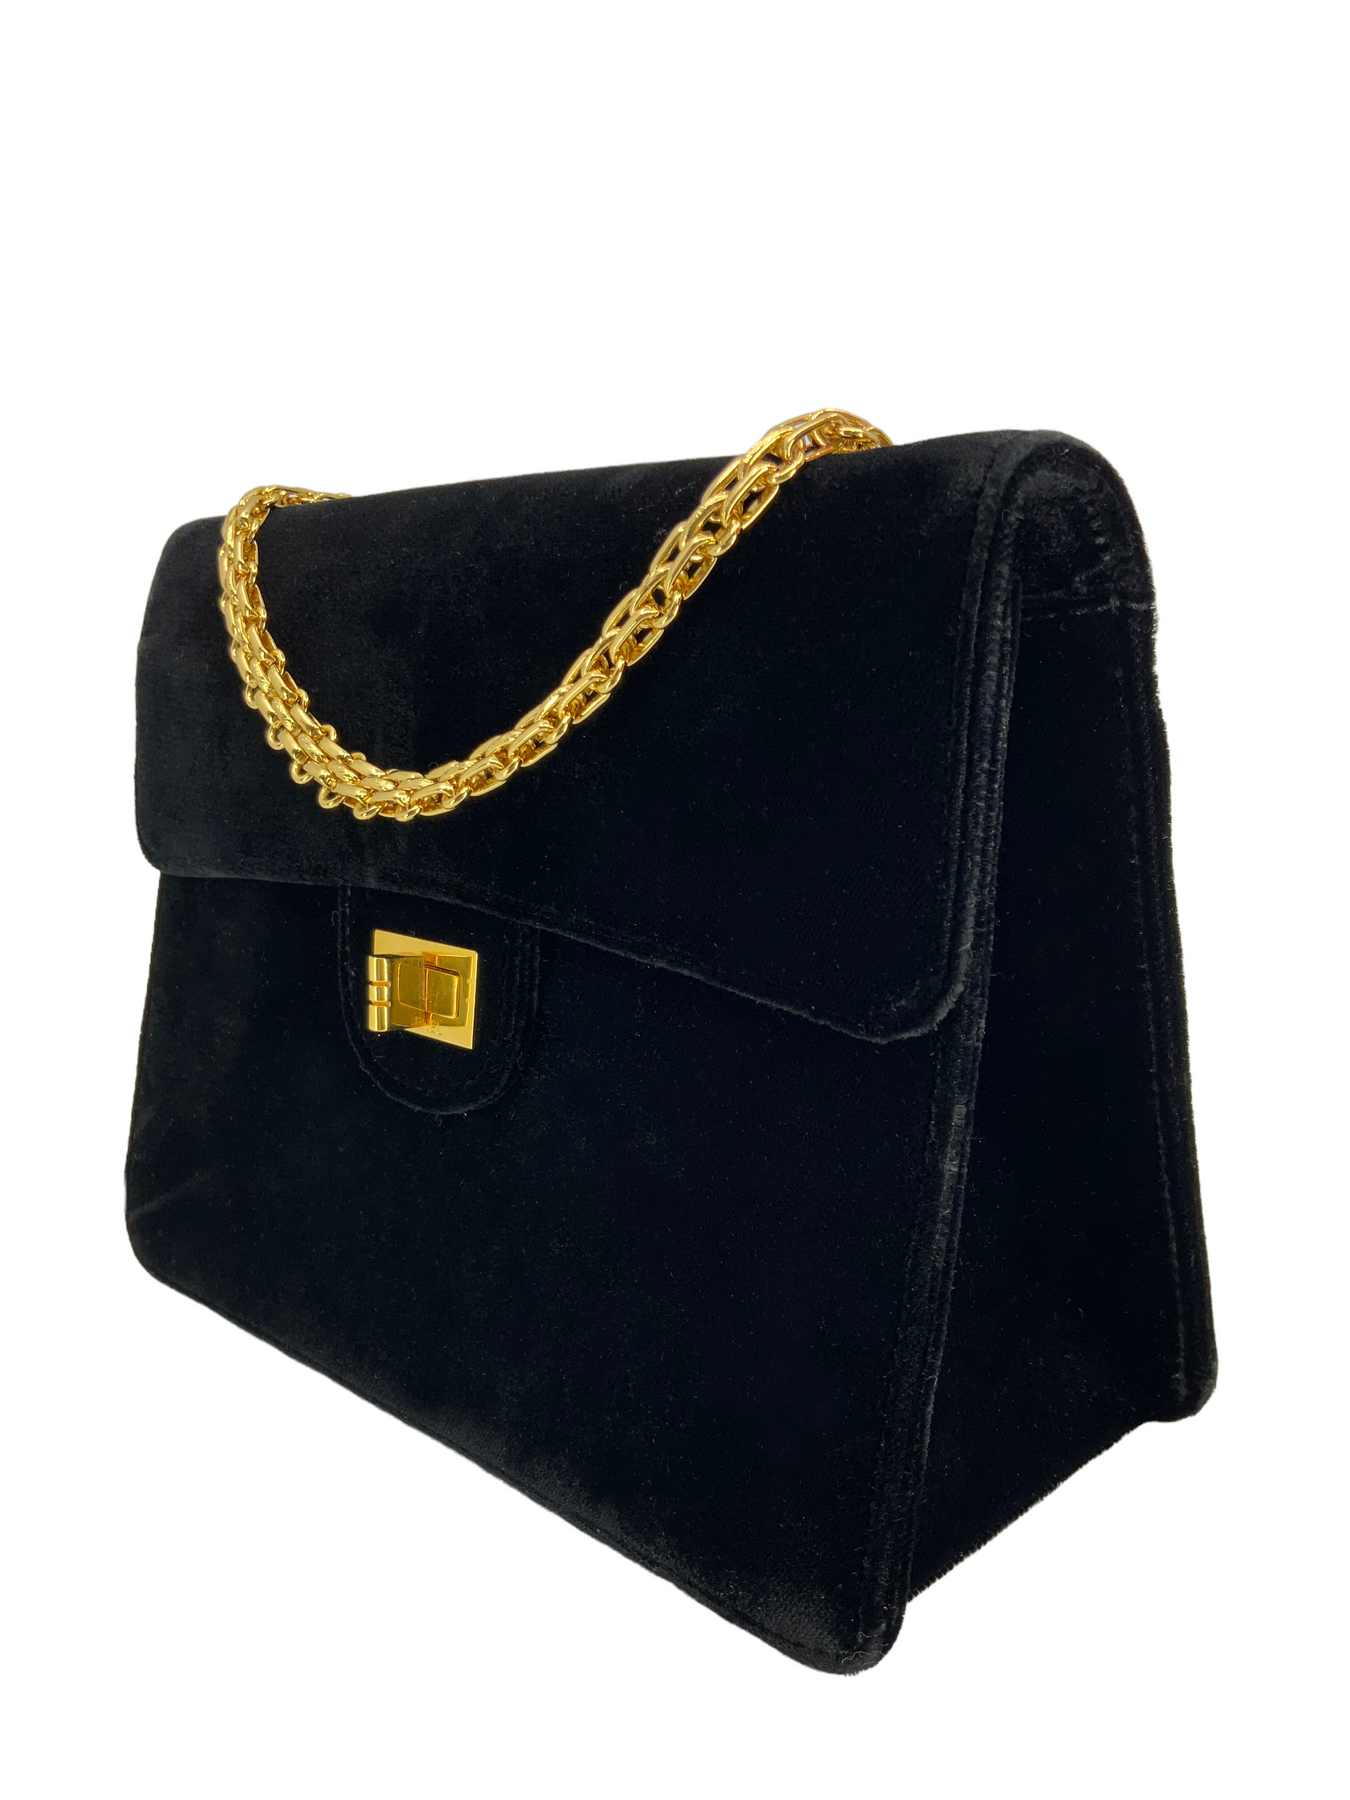 Vintage Chanel Velvet hand bag. On website search for AO35481